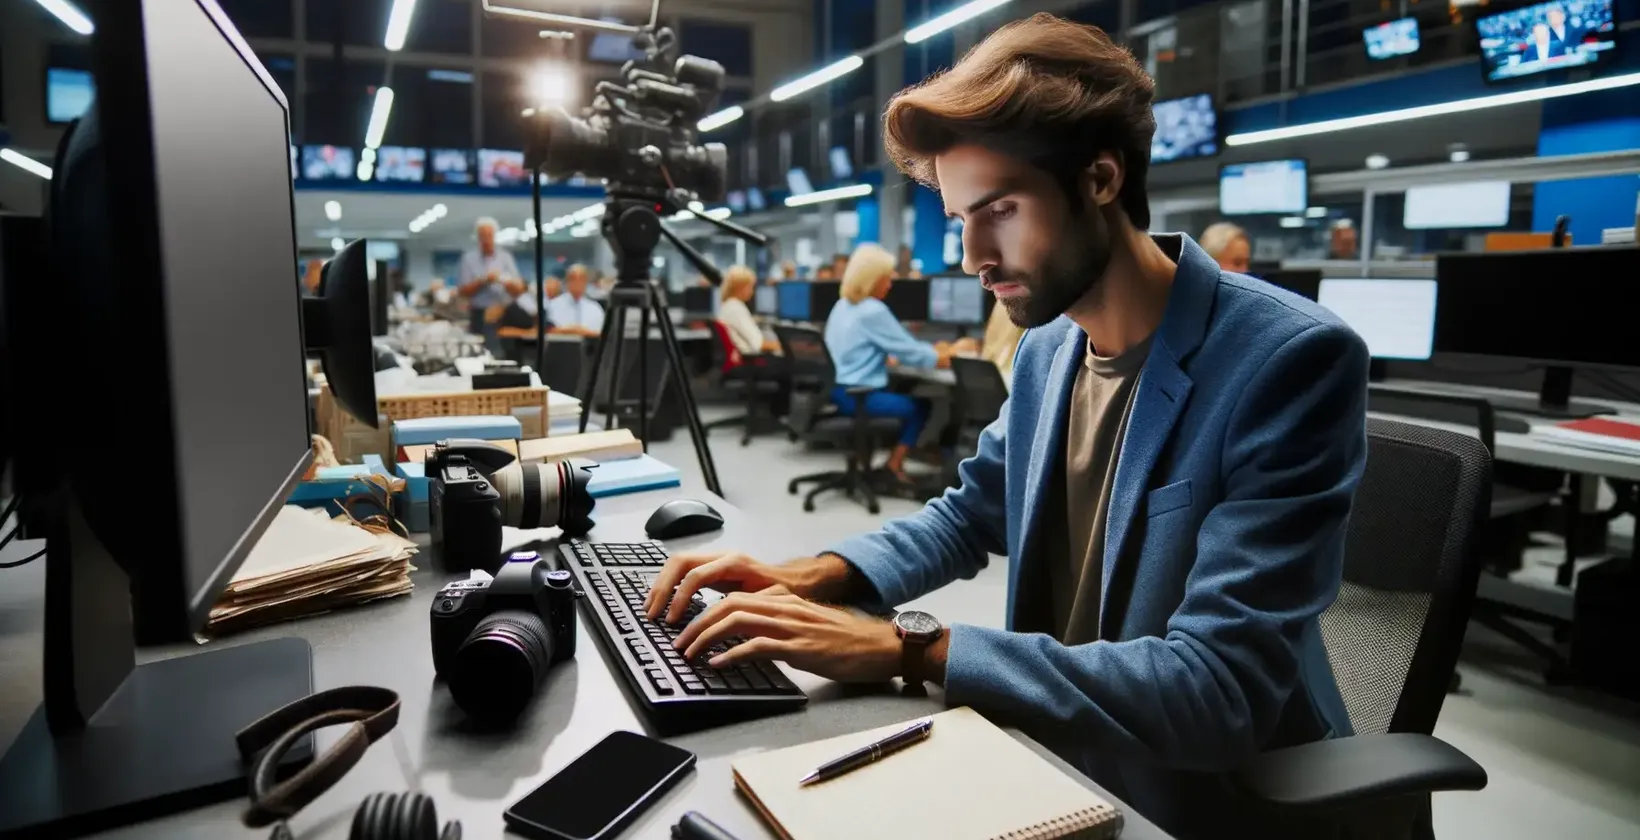 Novinar v natrpanem uredništvu z uporabo programske opreme za prepisovanje na računalniku.
